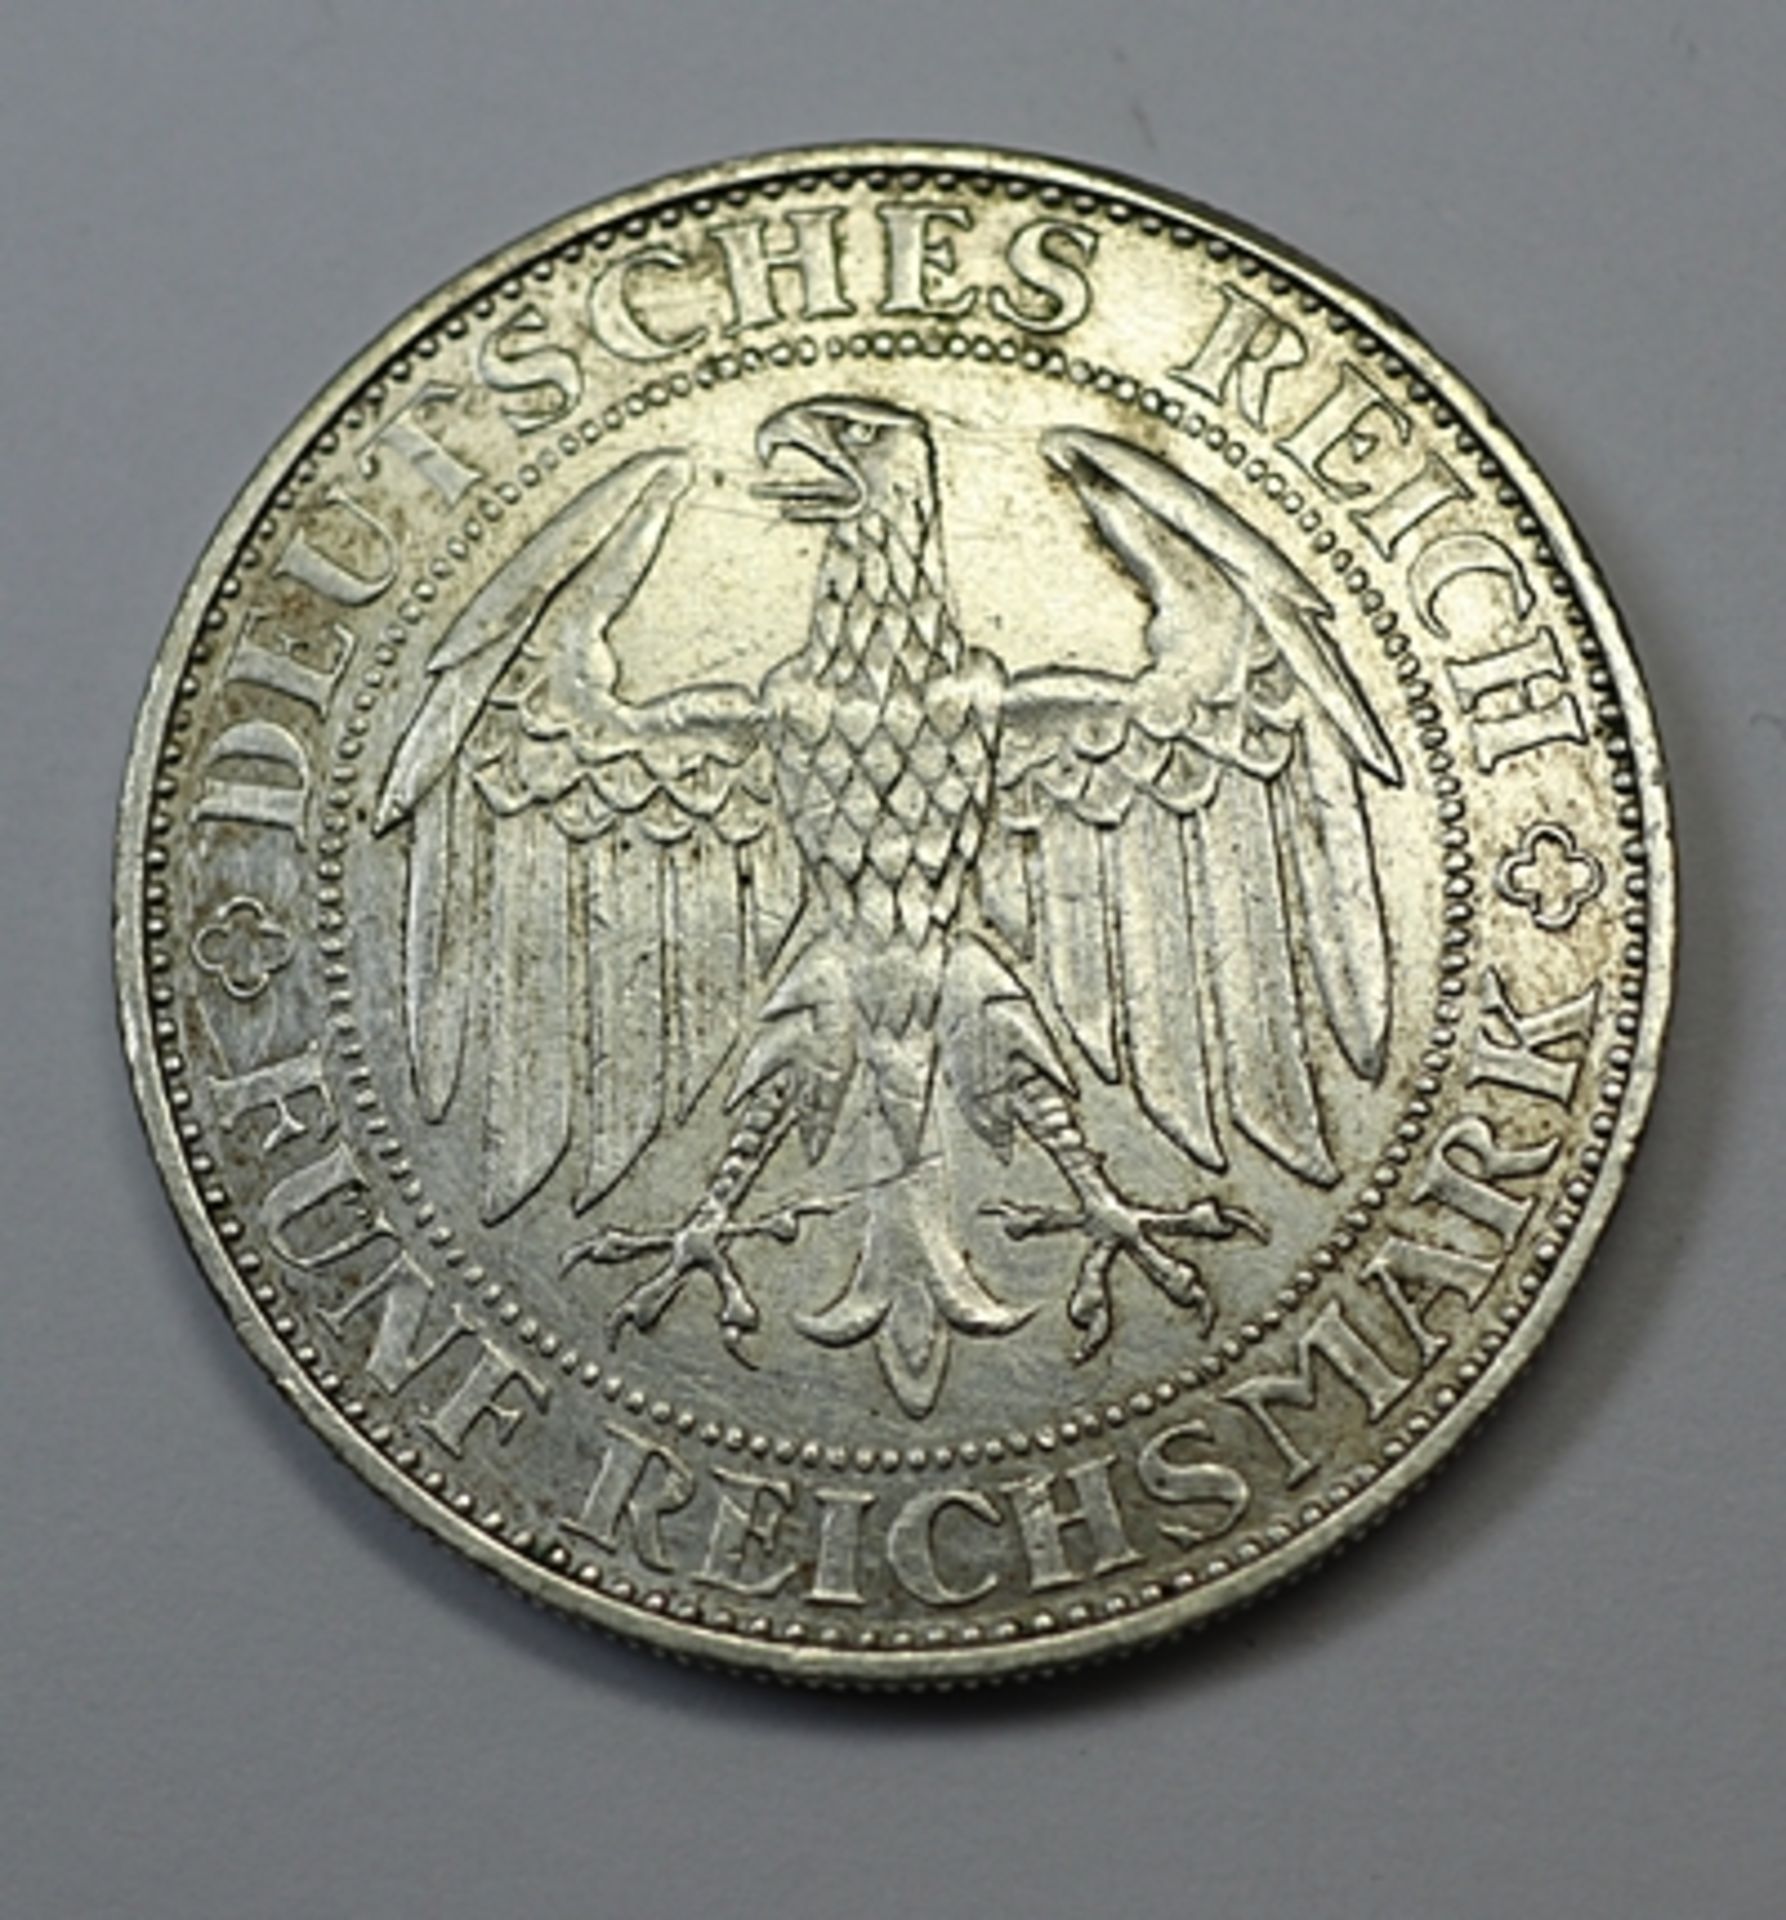 Fünf Reichsmark, Deutsches Reich, Tausend Jahre Burg und Stadt Meissen 1929 E, vz., 25,15 gr - Bild 2 aus 2